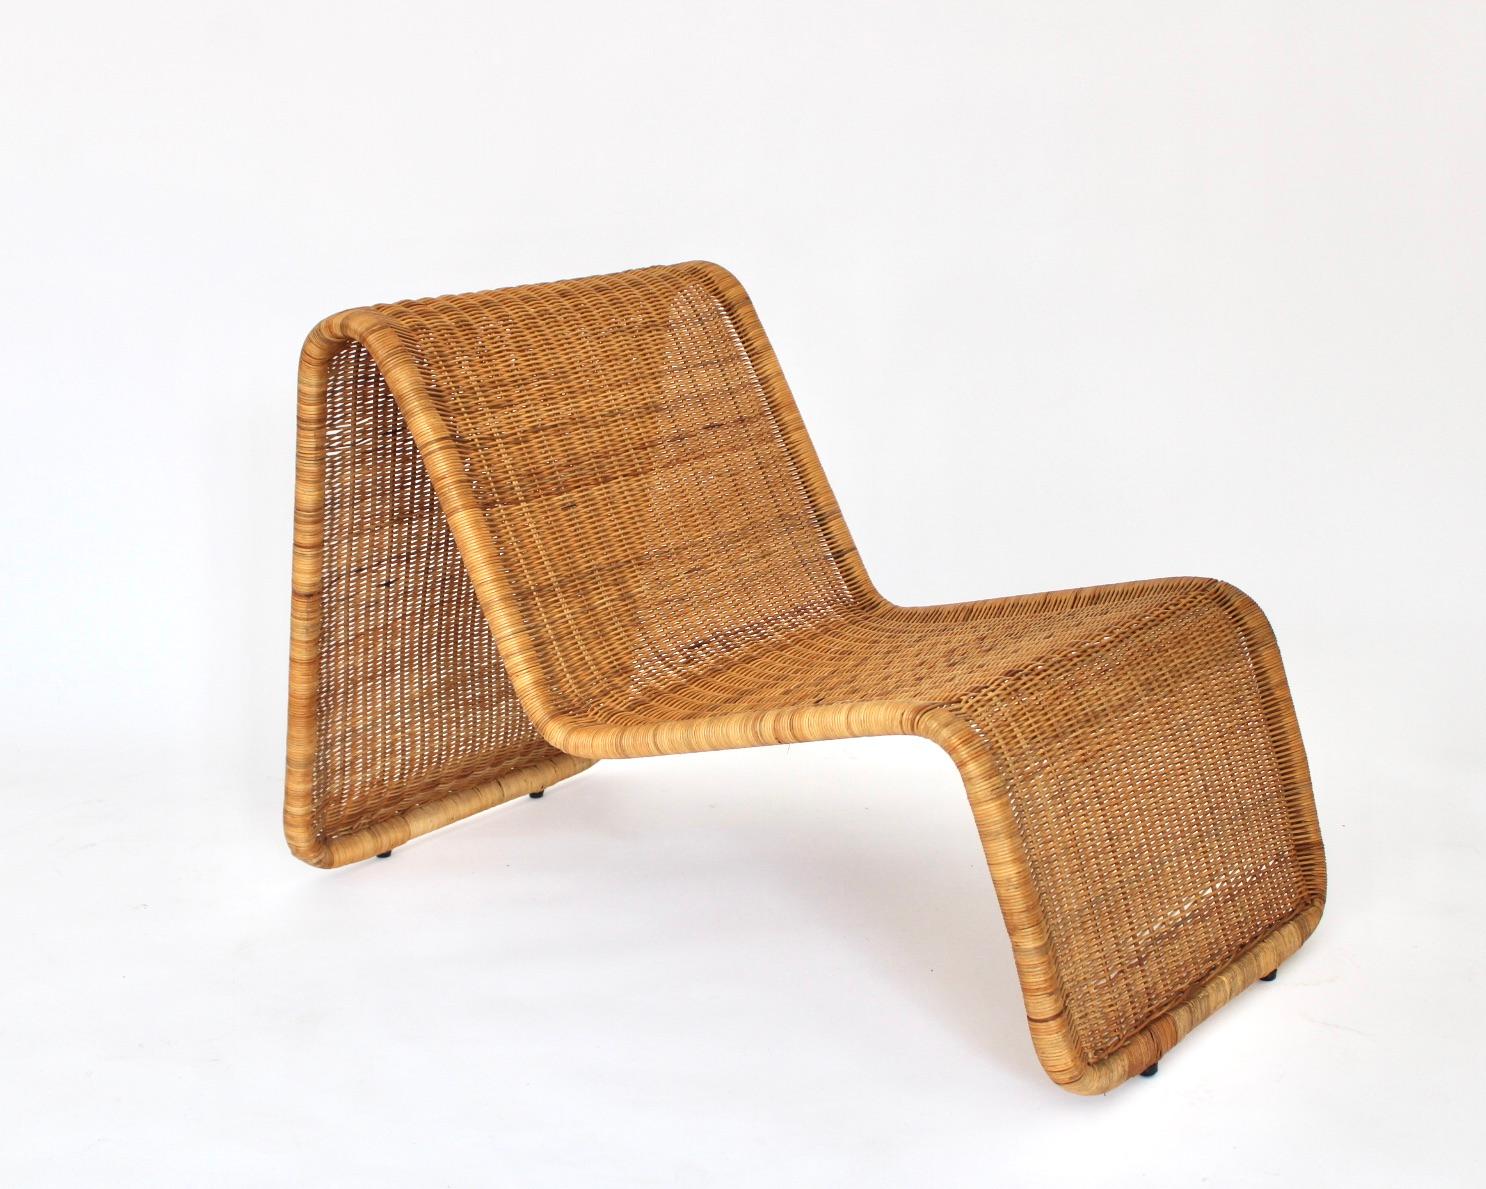 Wicker Tito Agnoli Rattan Sculptural Italian Lounge Chairs 